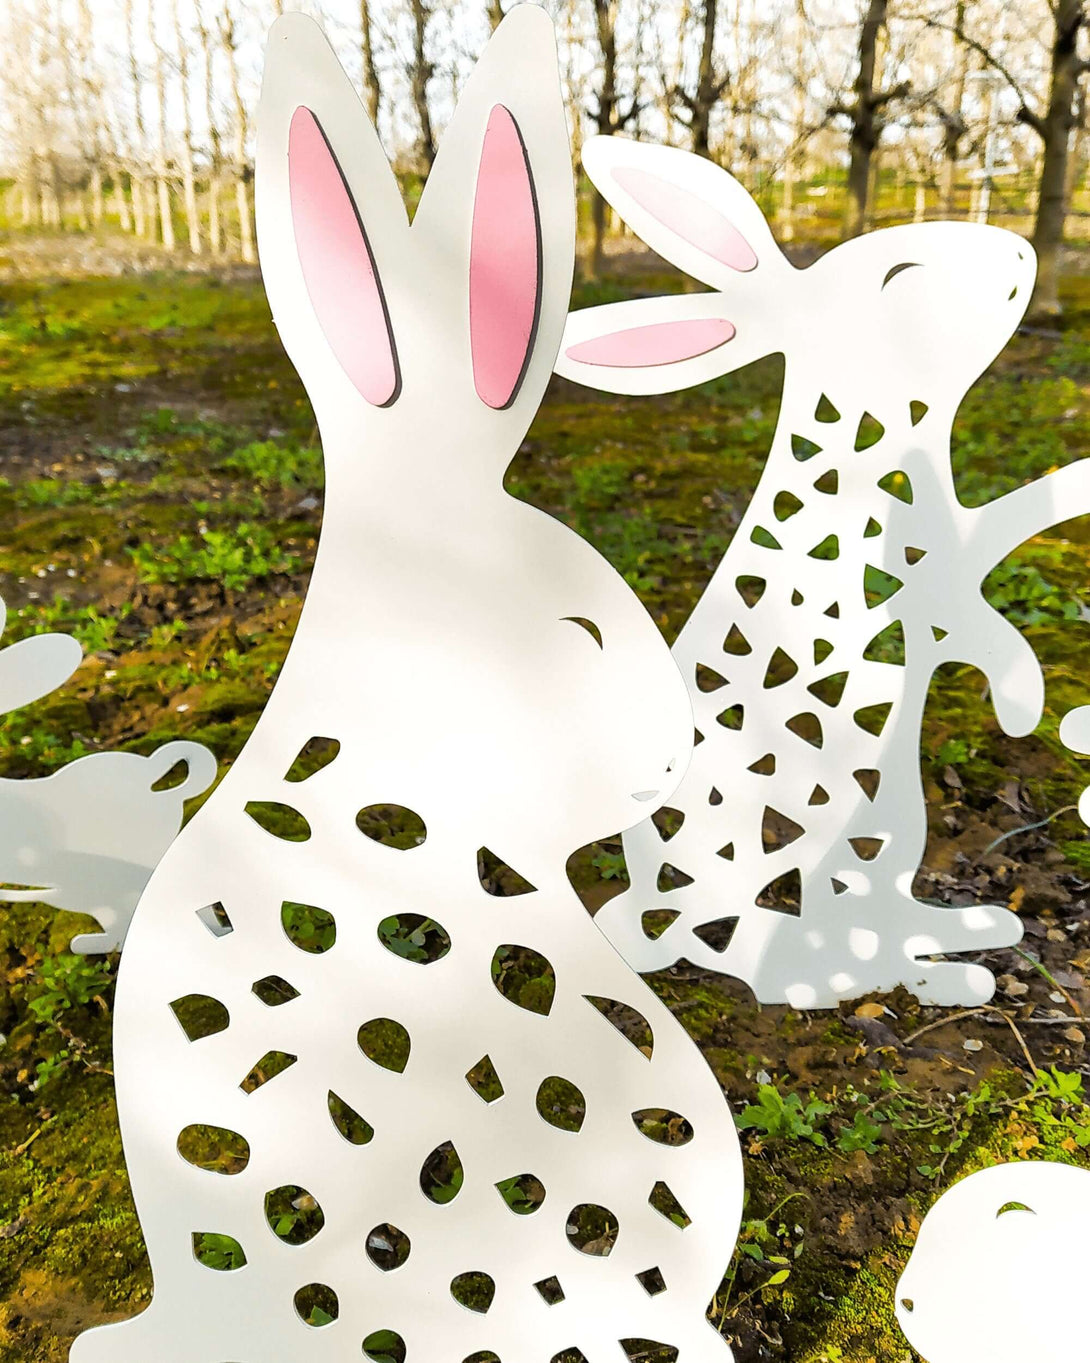 White Rabbit Yard Art Decoration - Rabbit Garden Art - Rabbit Decor - Metal Garden Art - Farm Decor -  Metal Garden - Bunny Garden Yard Art